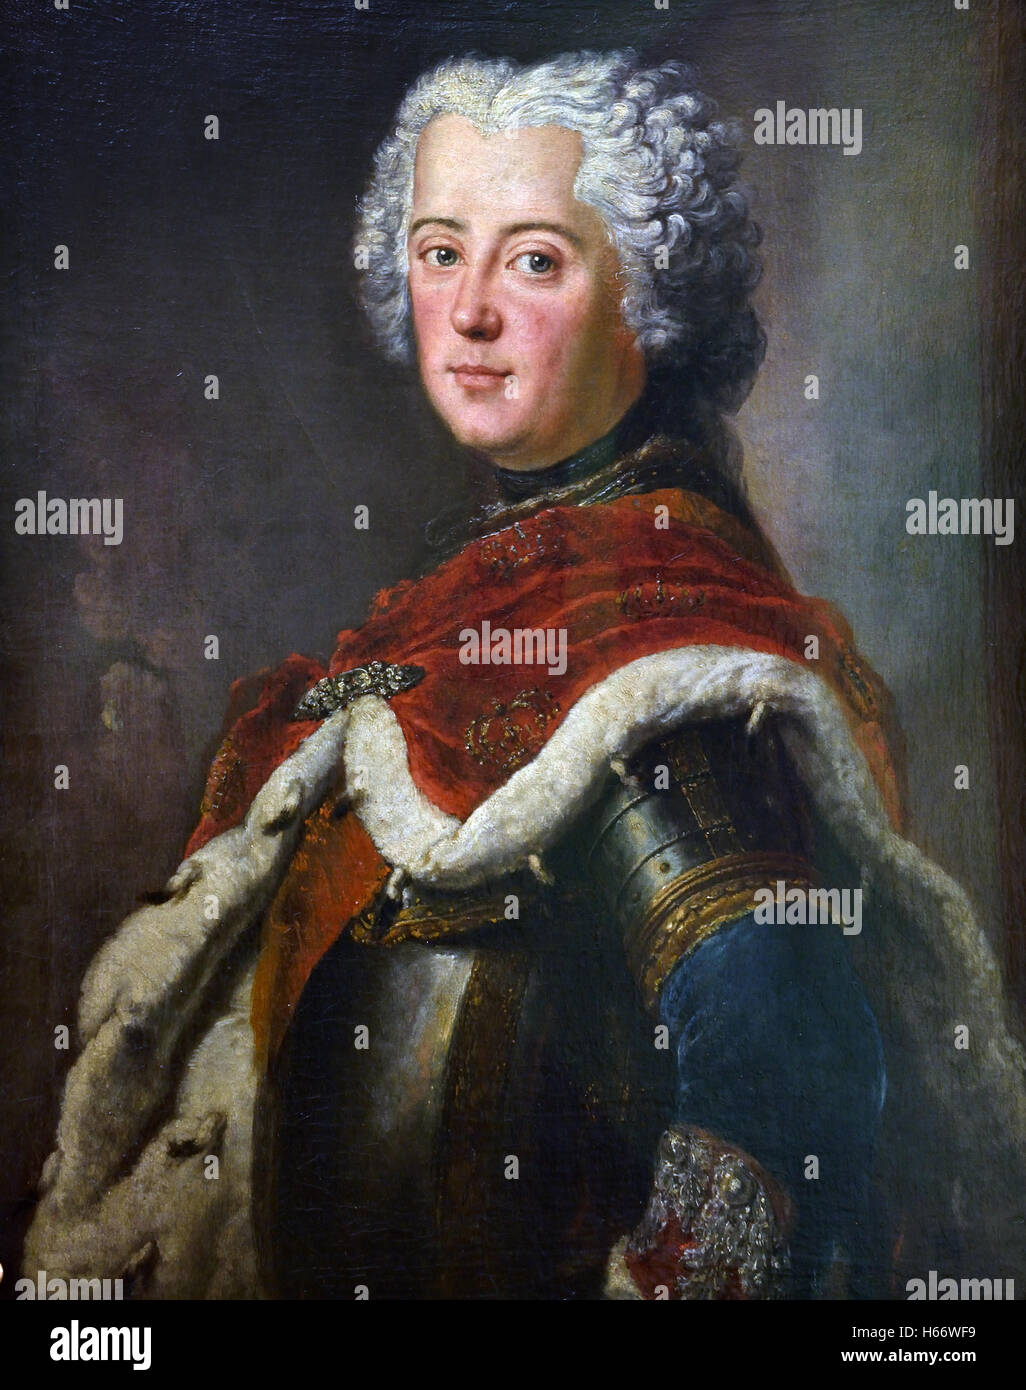 Frédéric le Grand (1712-1786) en tant que prince héritier - Frédéric II a été roi de Prusse à partir de 1740 jusqu'à 1786, le plus long règne d'un roi Hohenzollern Antoine Pesne 1683-1757 peintre allemand Allemagne Banque D'Images